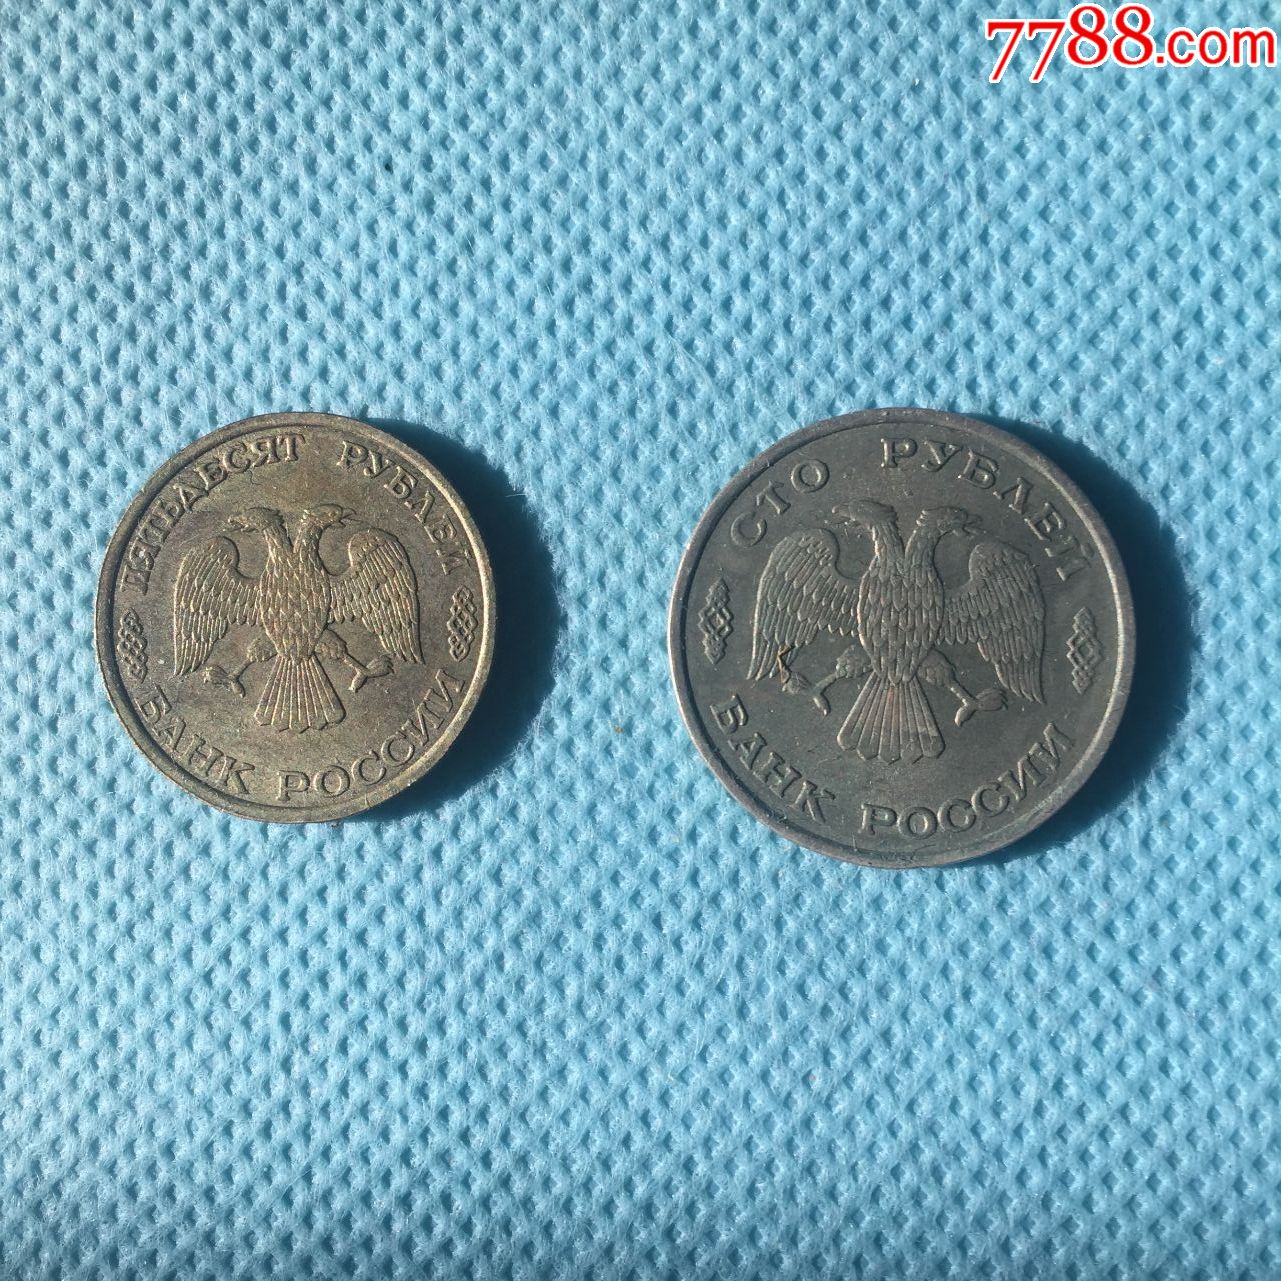 苏联解体后,俄罗斯的第一批50卢布硬币93年版